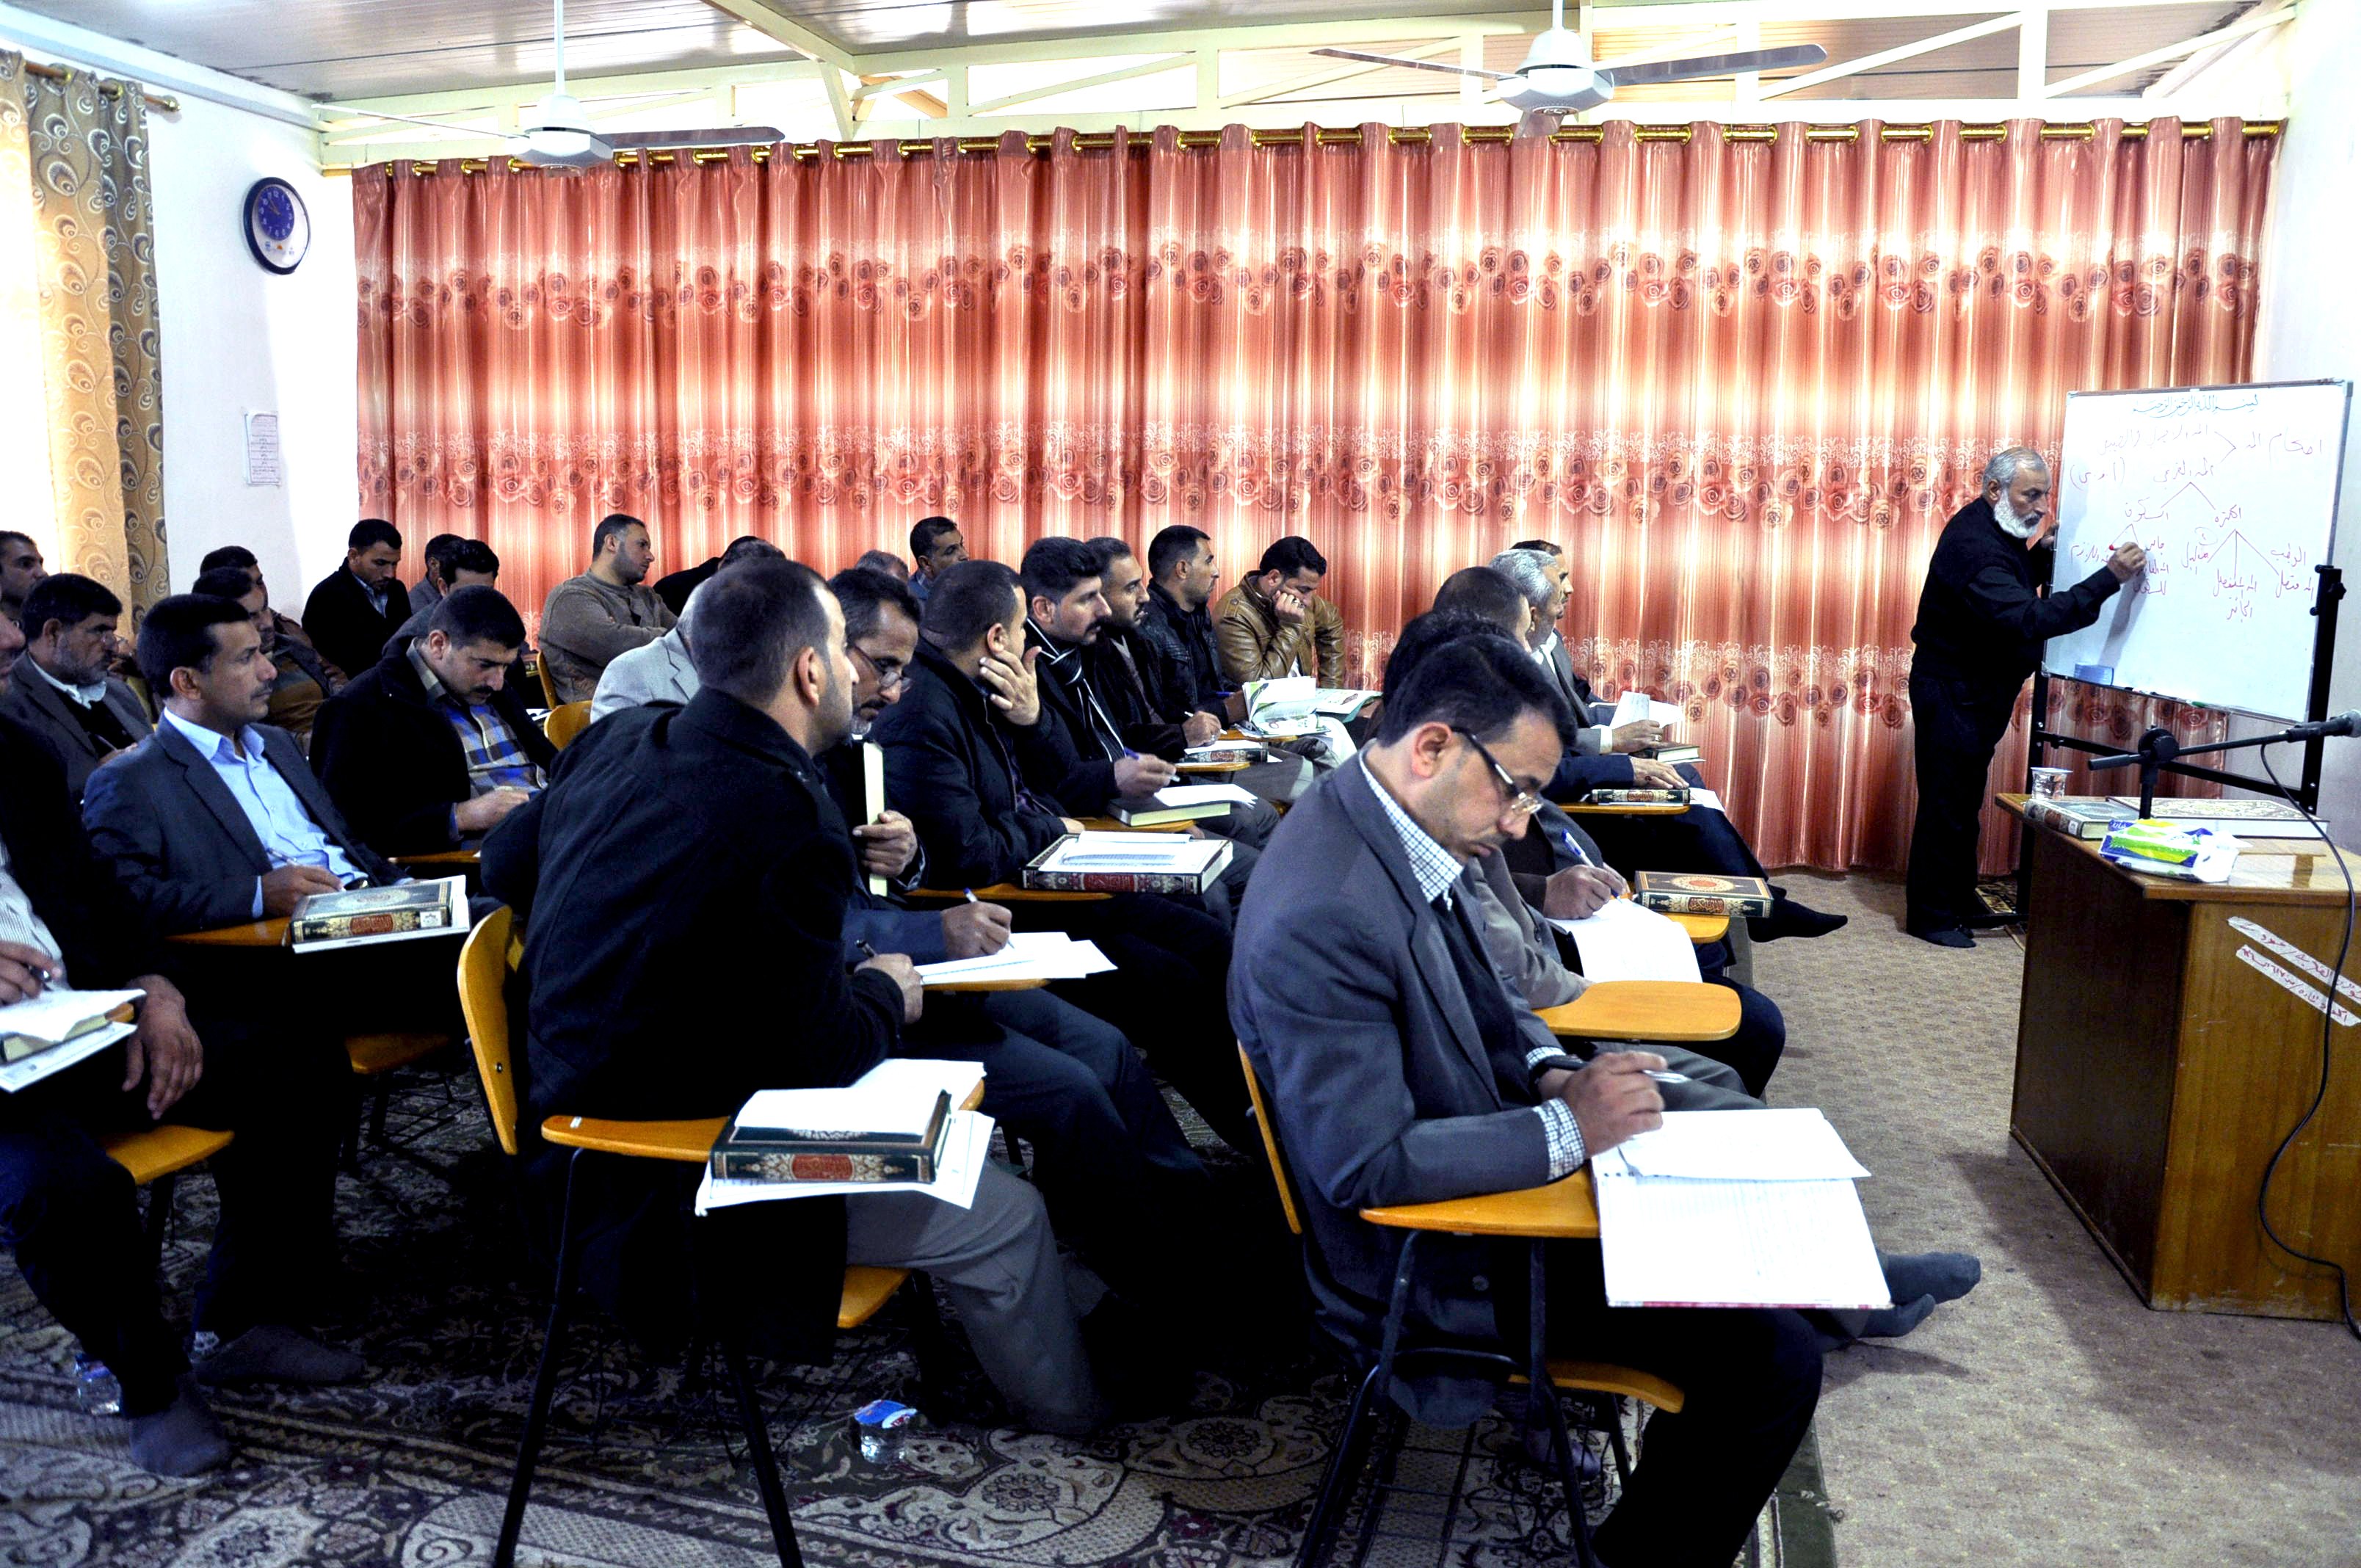 معهدُ القرآن الكريم في قضاء الهندية يُقيمُ دورةً قرآنية تخصّصية لمعلّمي ومدرّسي التربية الإسلامية..